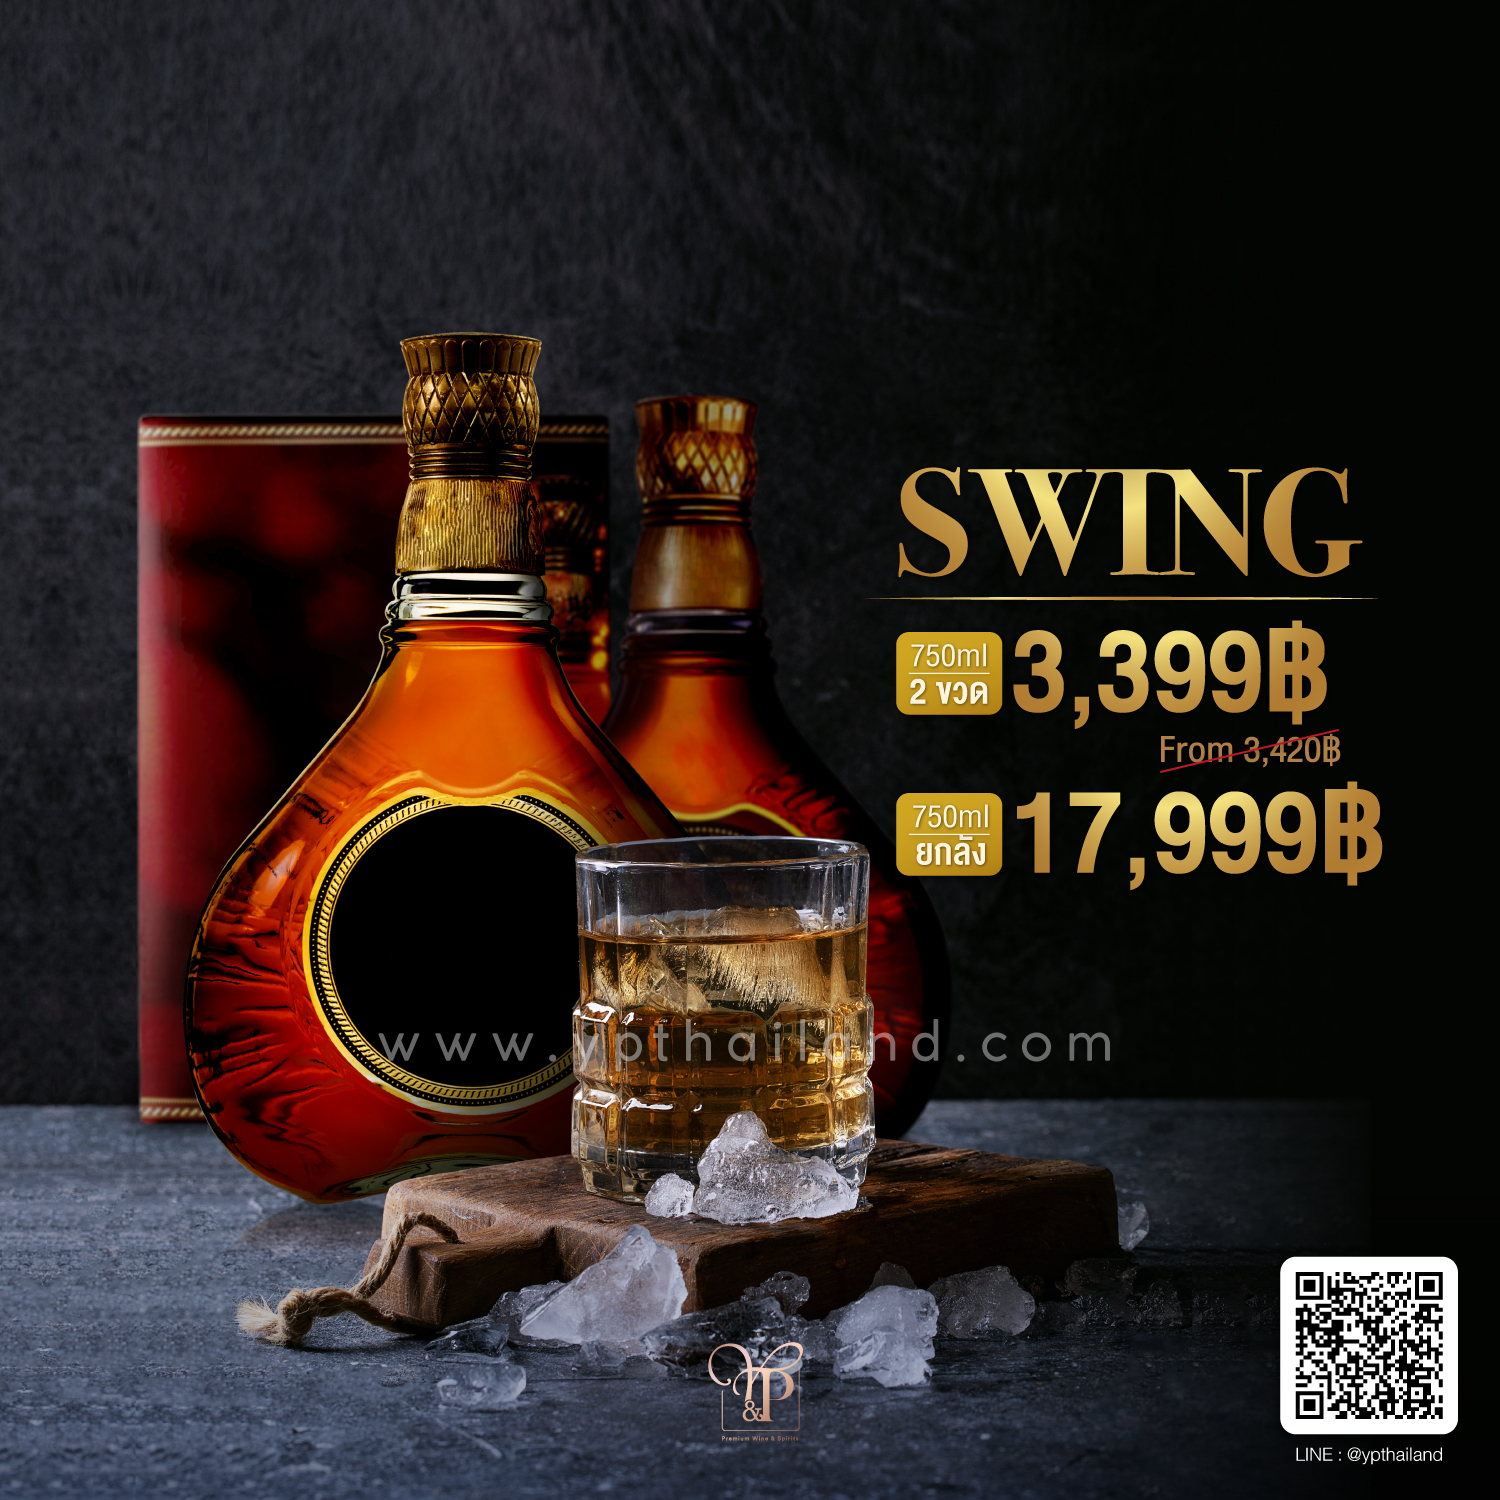 (JW) Swing ขนาด 750ml ราคา พิเศษ